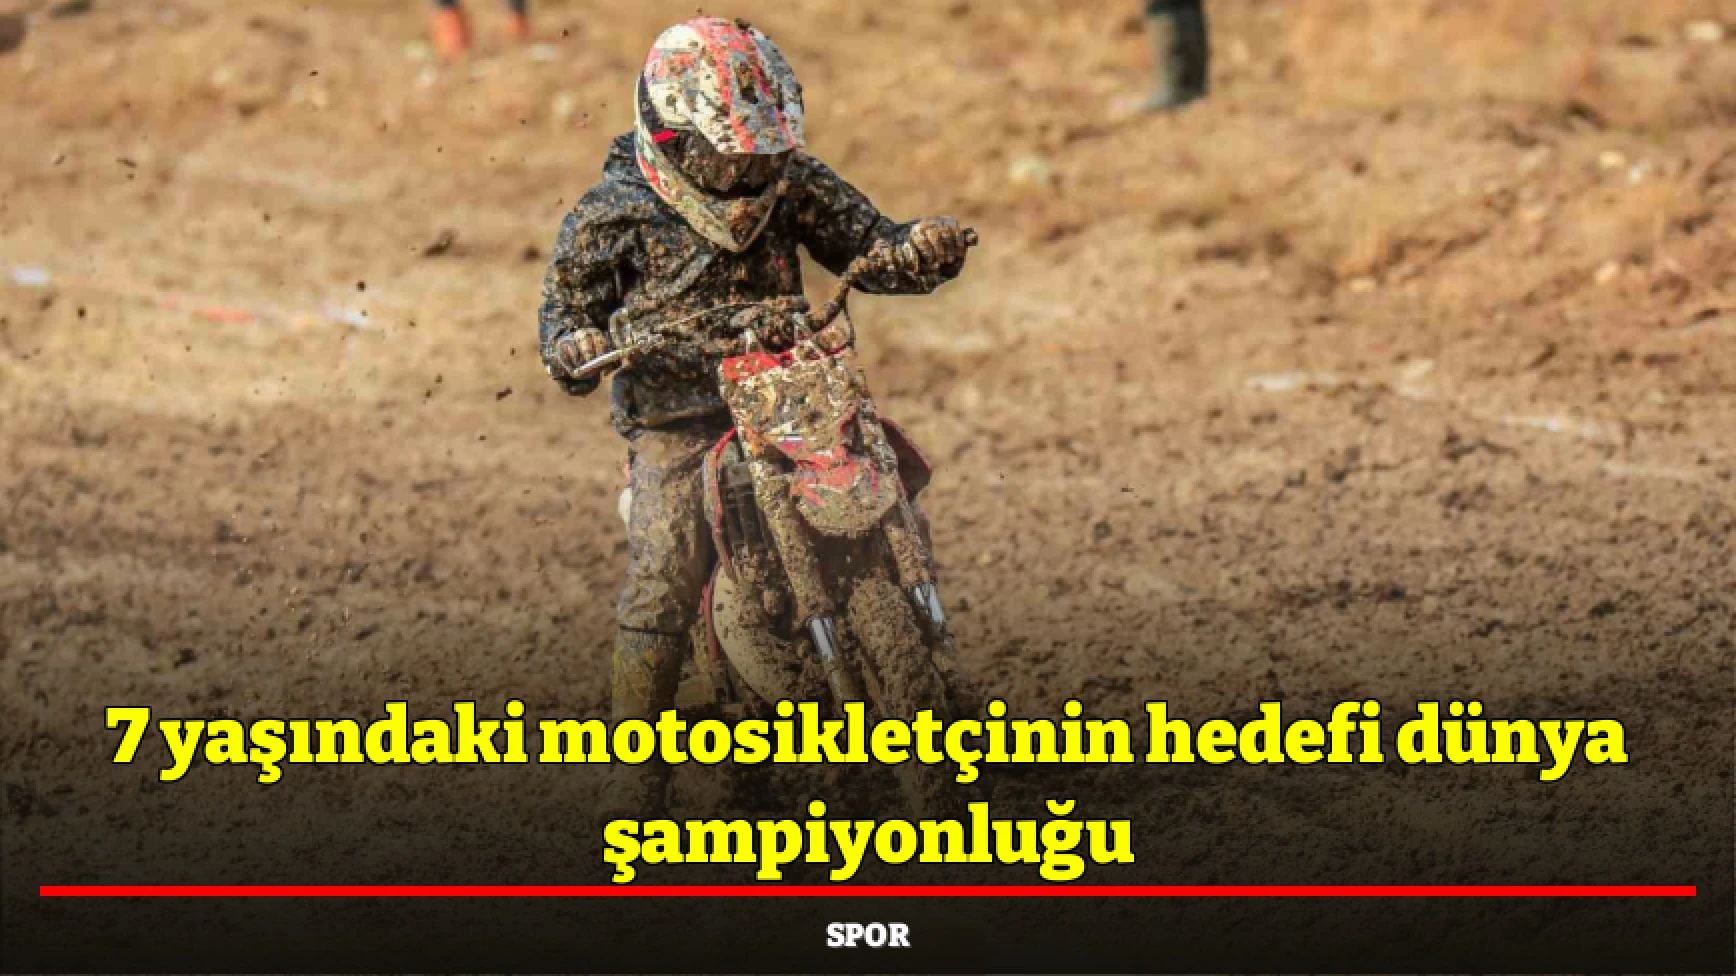 7 yaşındaki motosikletçinin hedefi dünya şampiyonluğu